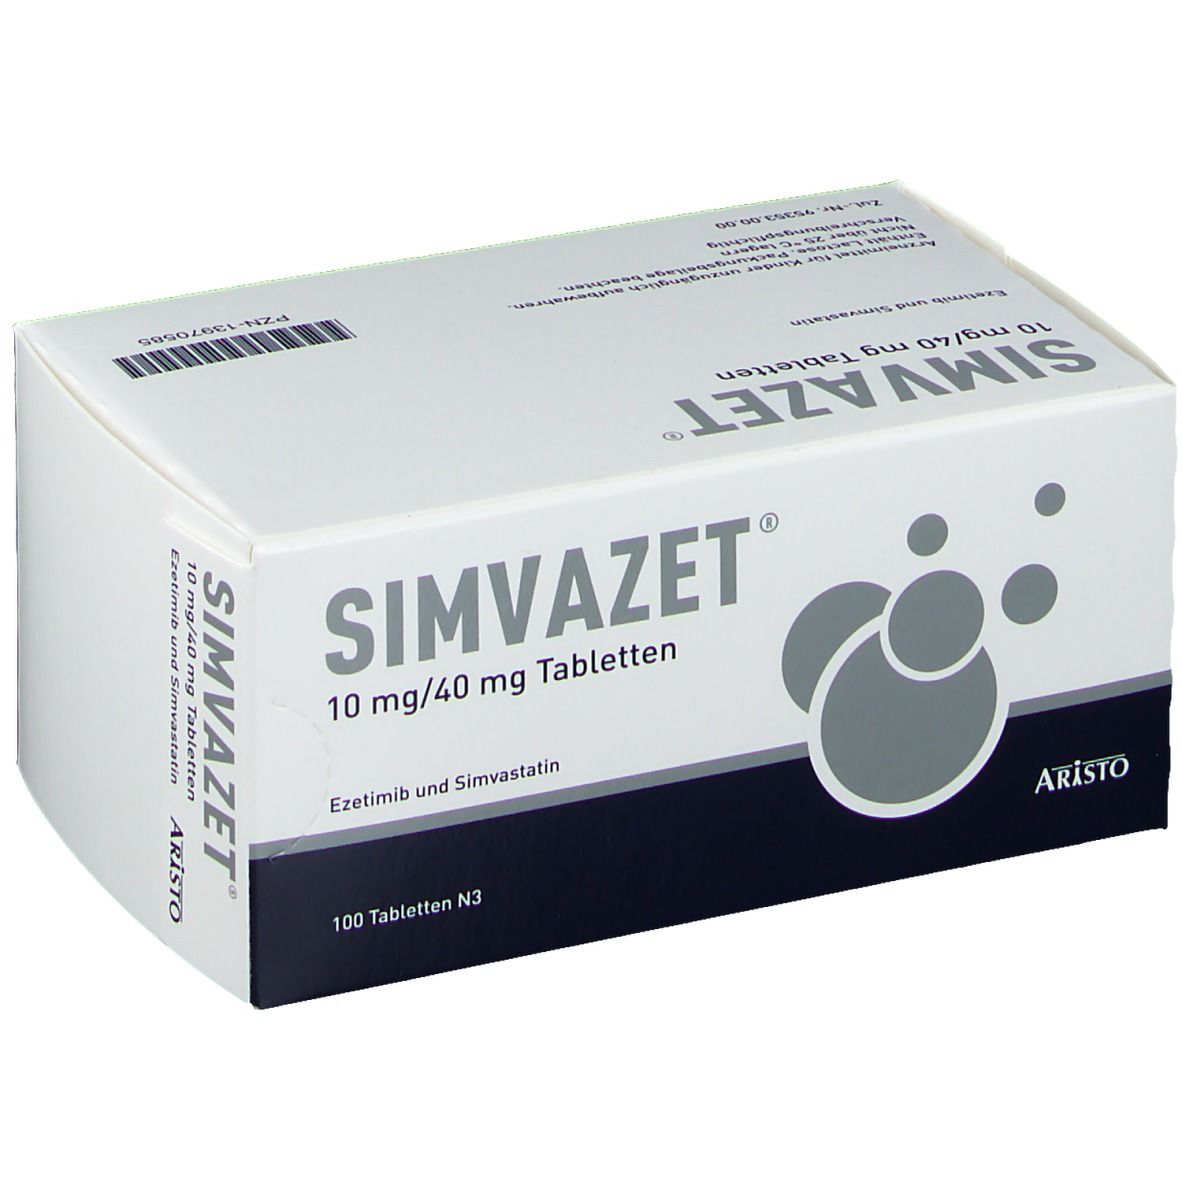 SIMVAZET® 10 mg/40 mg